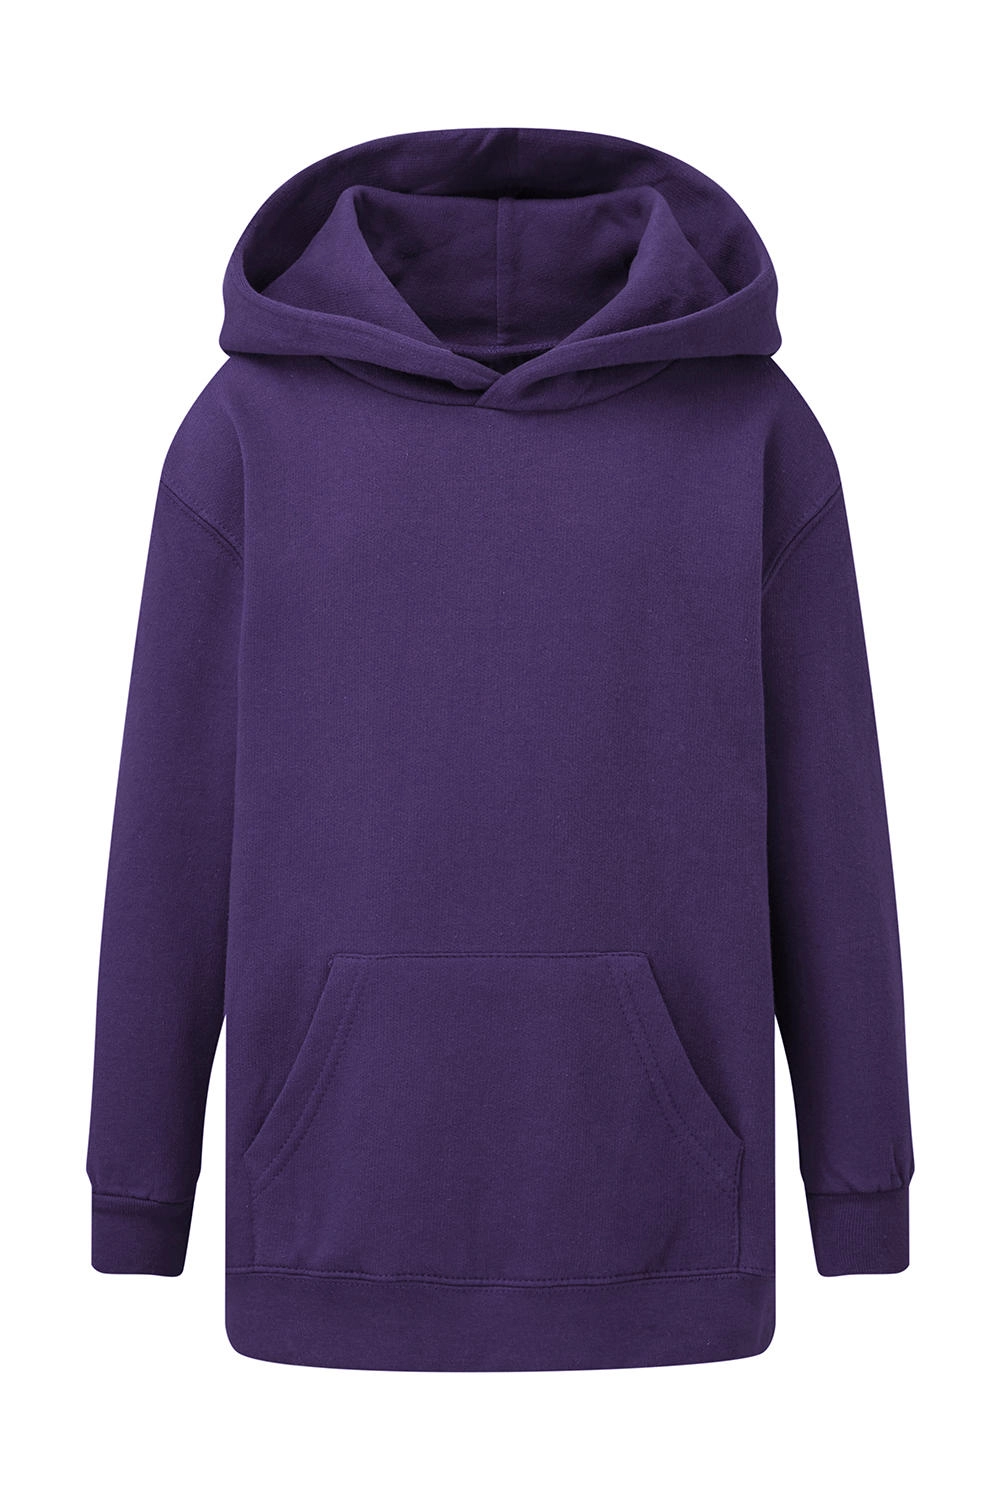 Hooded Sweatshirt Kids zum Besticken und Bedrucken in der Farbe Purple mit Ihren Logo, Schriftzug oder Motiv.